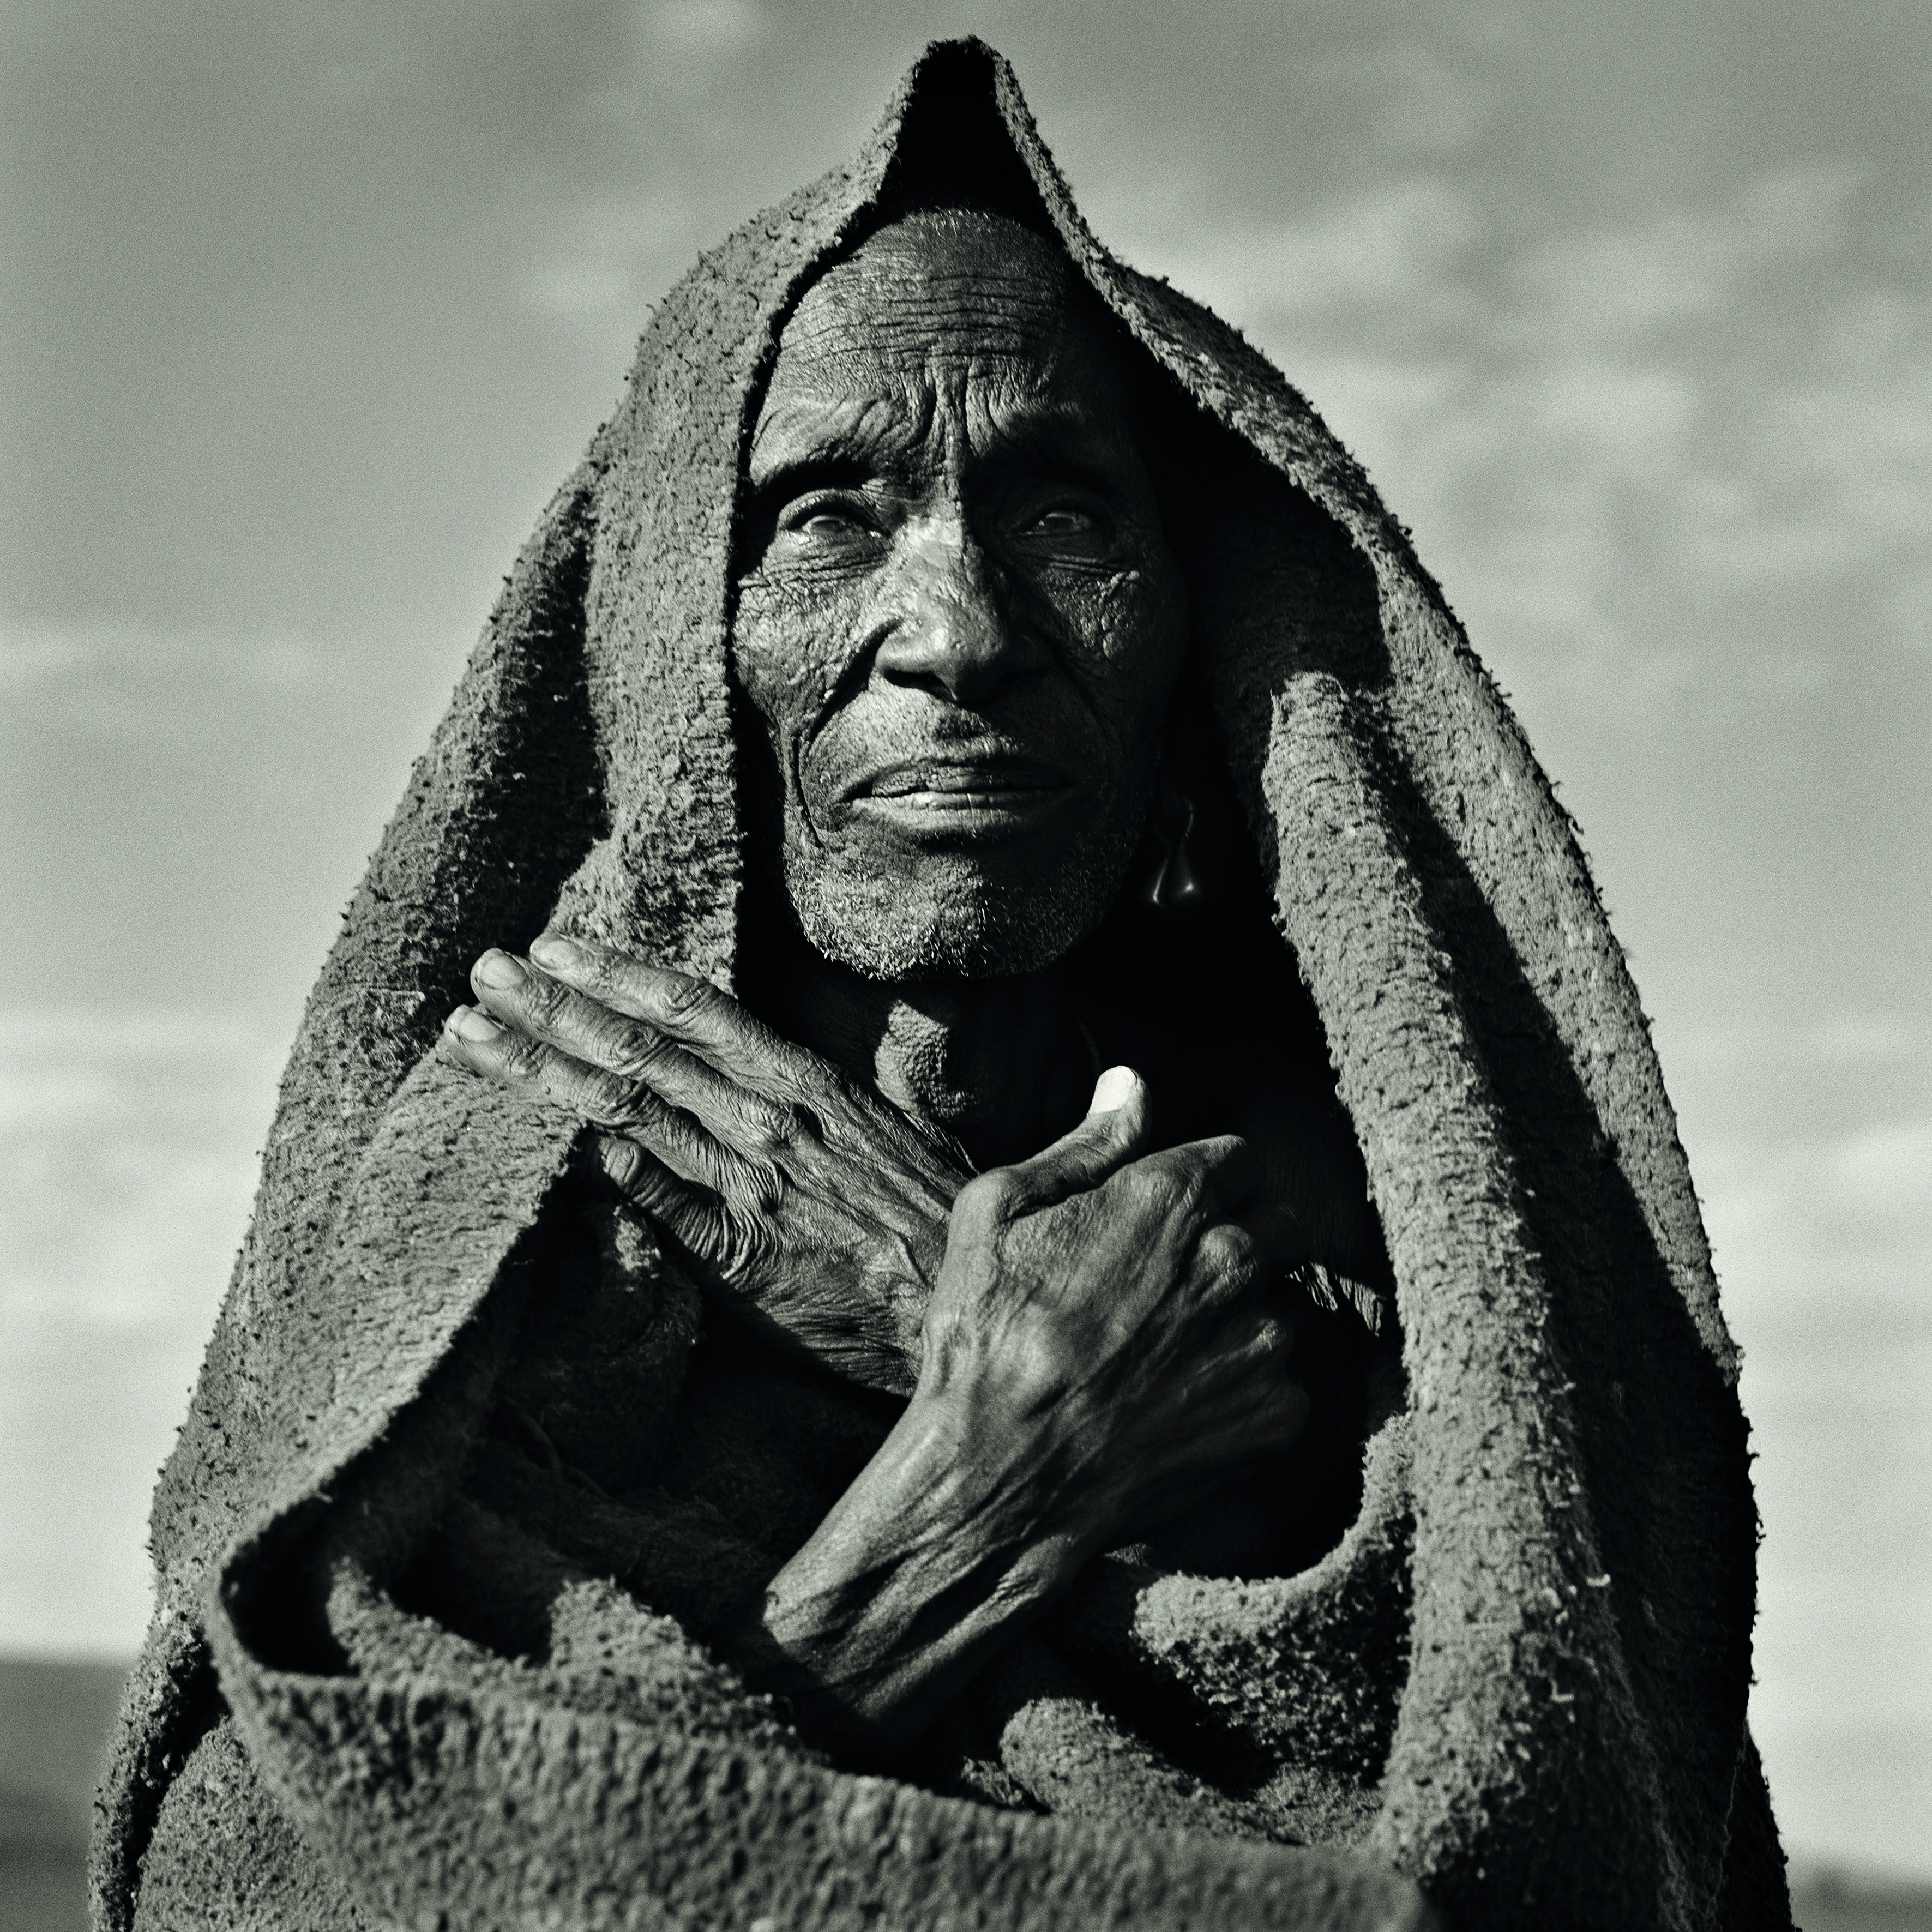 Masai Elder with Crossed Arms, Kenya, 1985